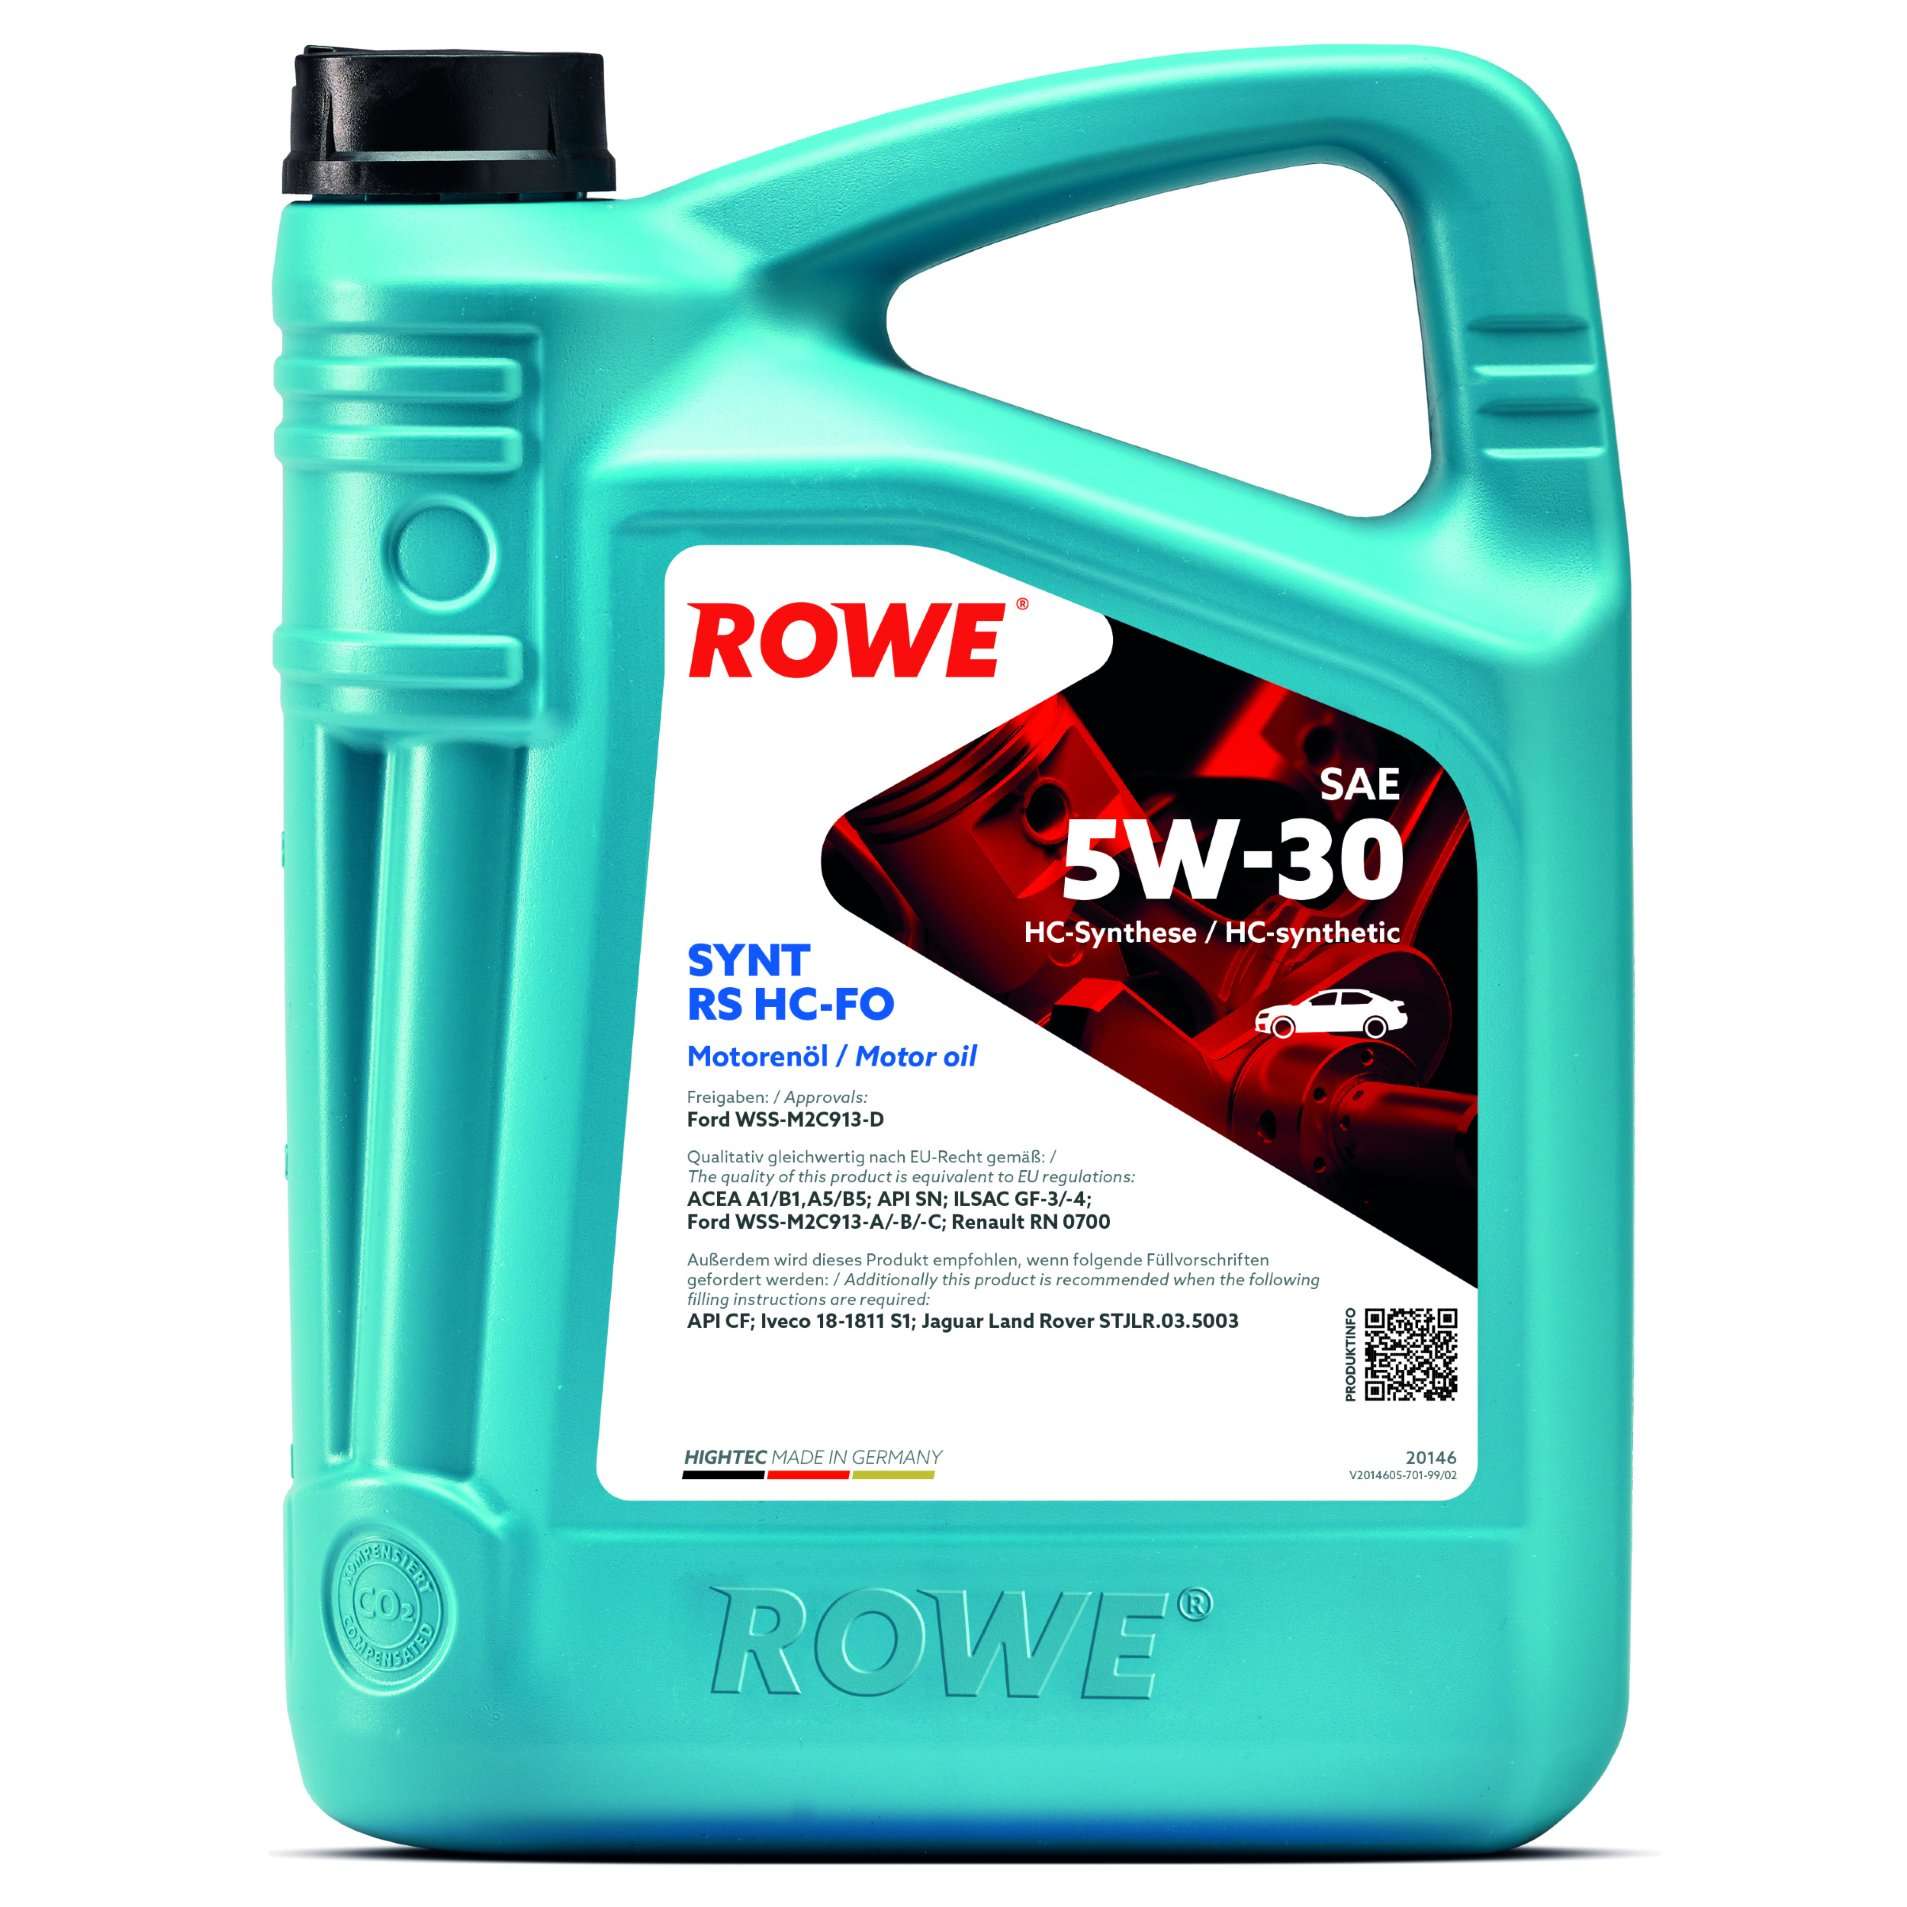 Моторна олива ROWE Synt RS HC-FO 5W-30 5 л, 20146-0050-99